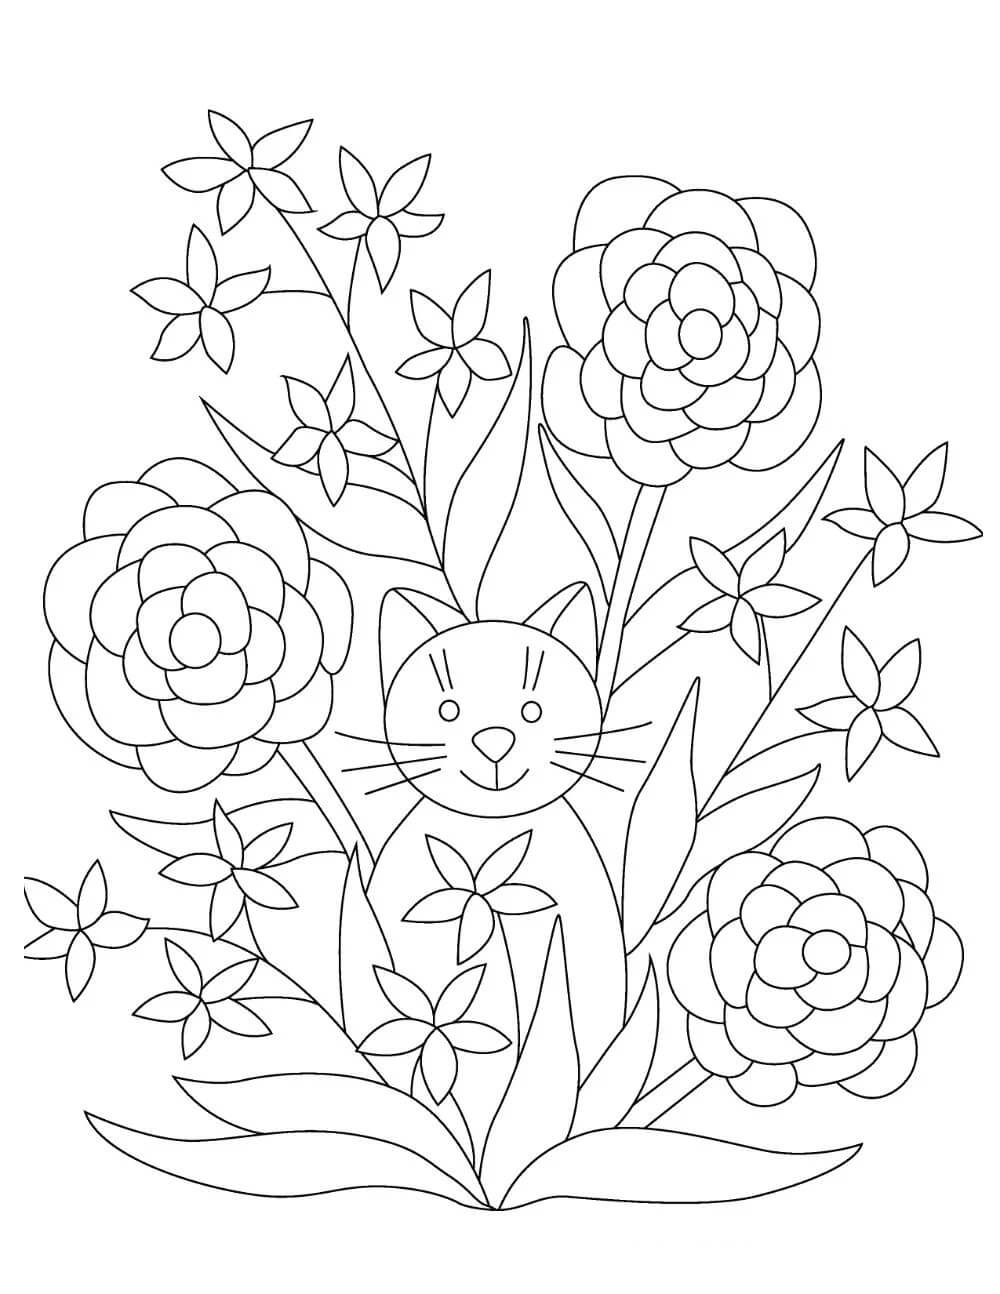 꽃을 든 고양이 coloring page